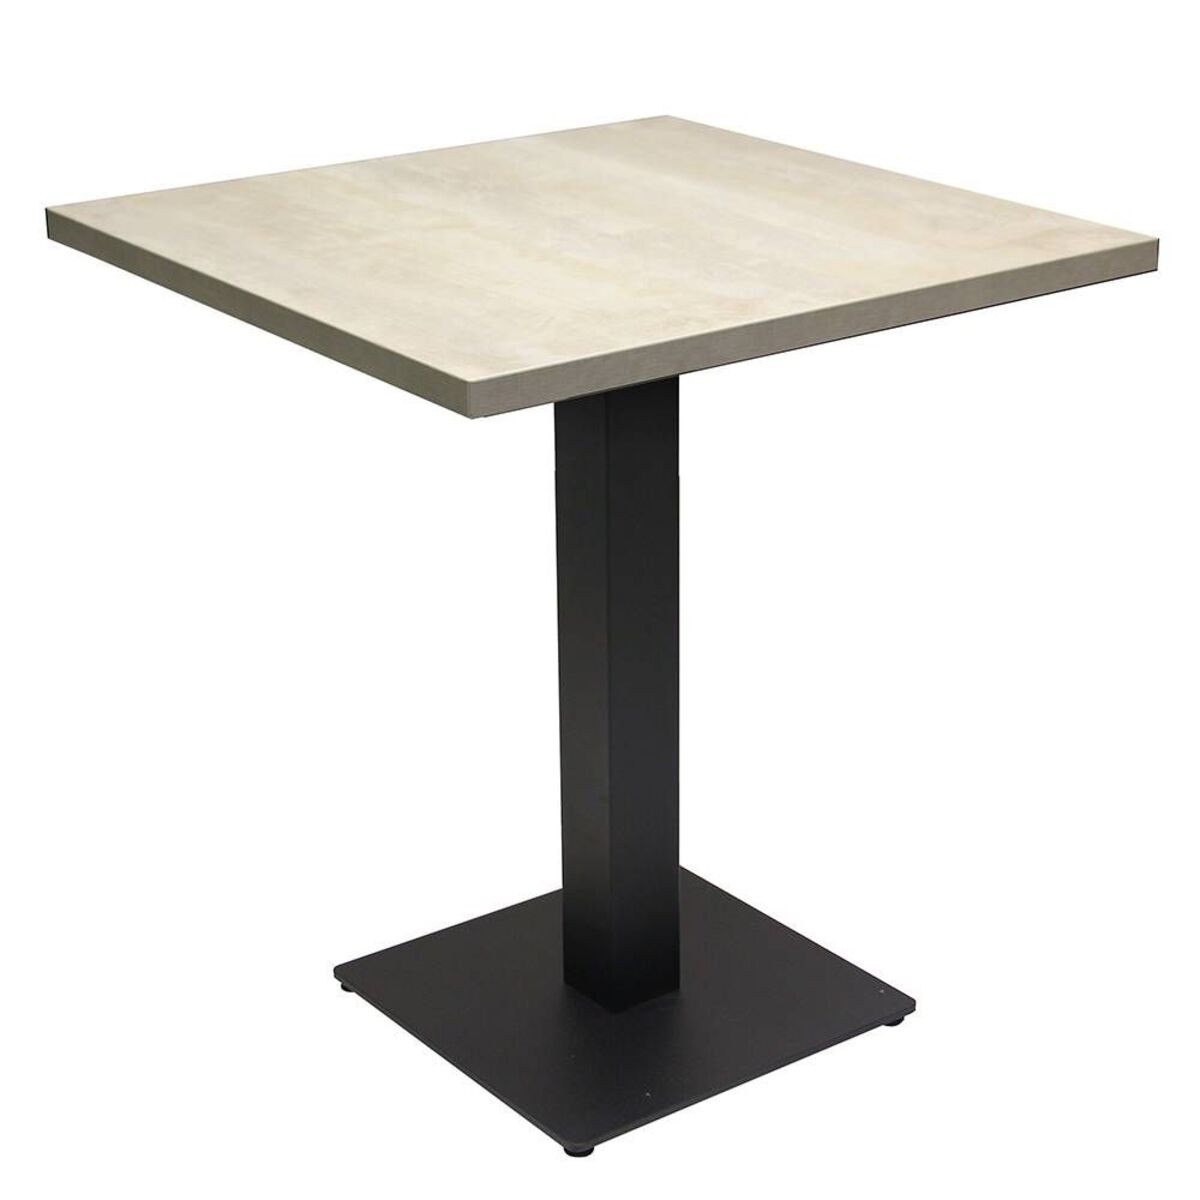 Table intérieure pied noir base carrée & plateau tavola blanc 70x70 cm